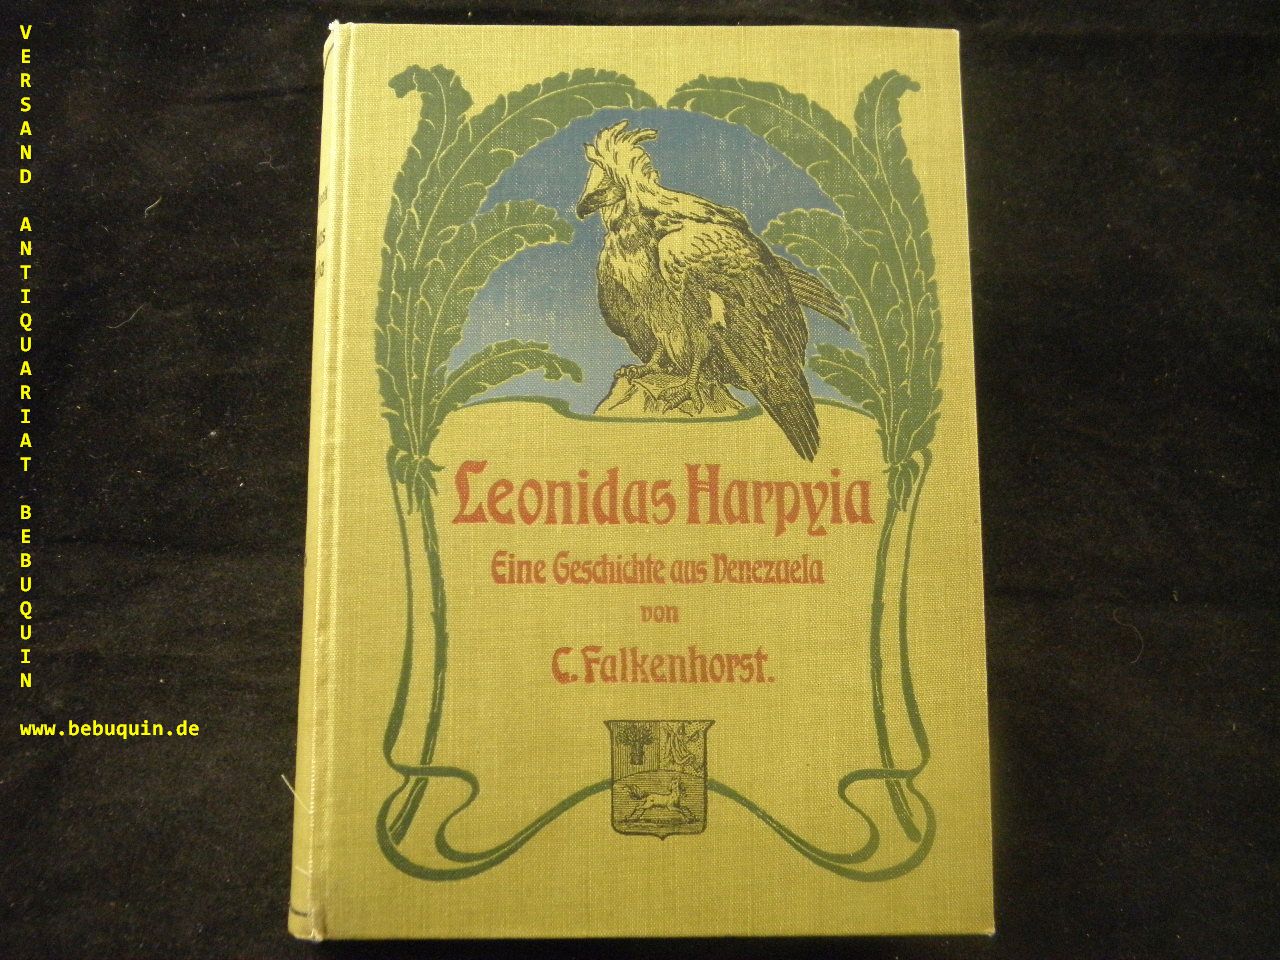 FALKENHORST, C.: - Leonidas Harpyia. Eine Geschichte aus Venezuela.